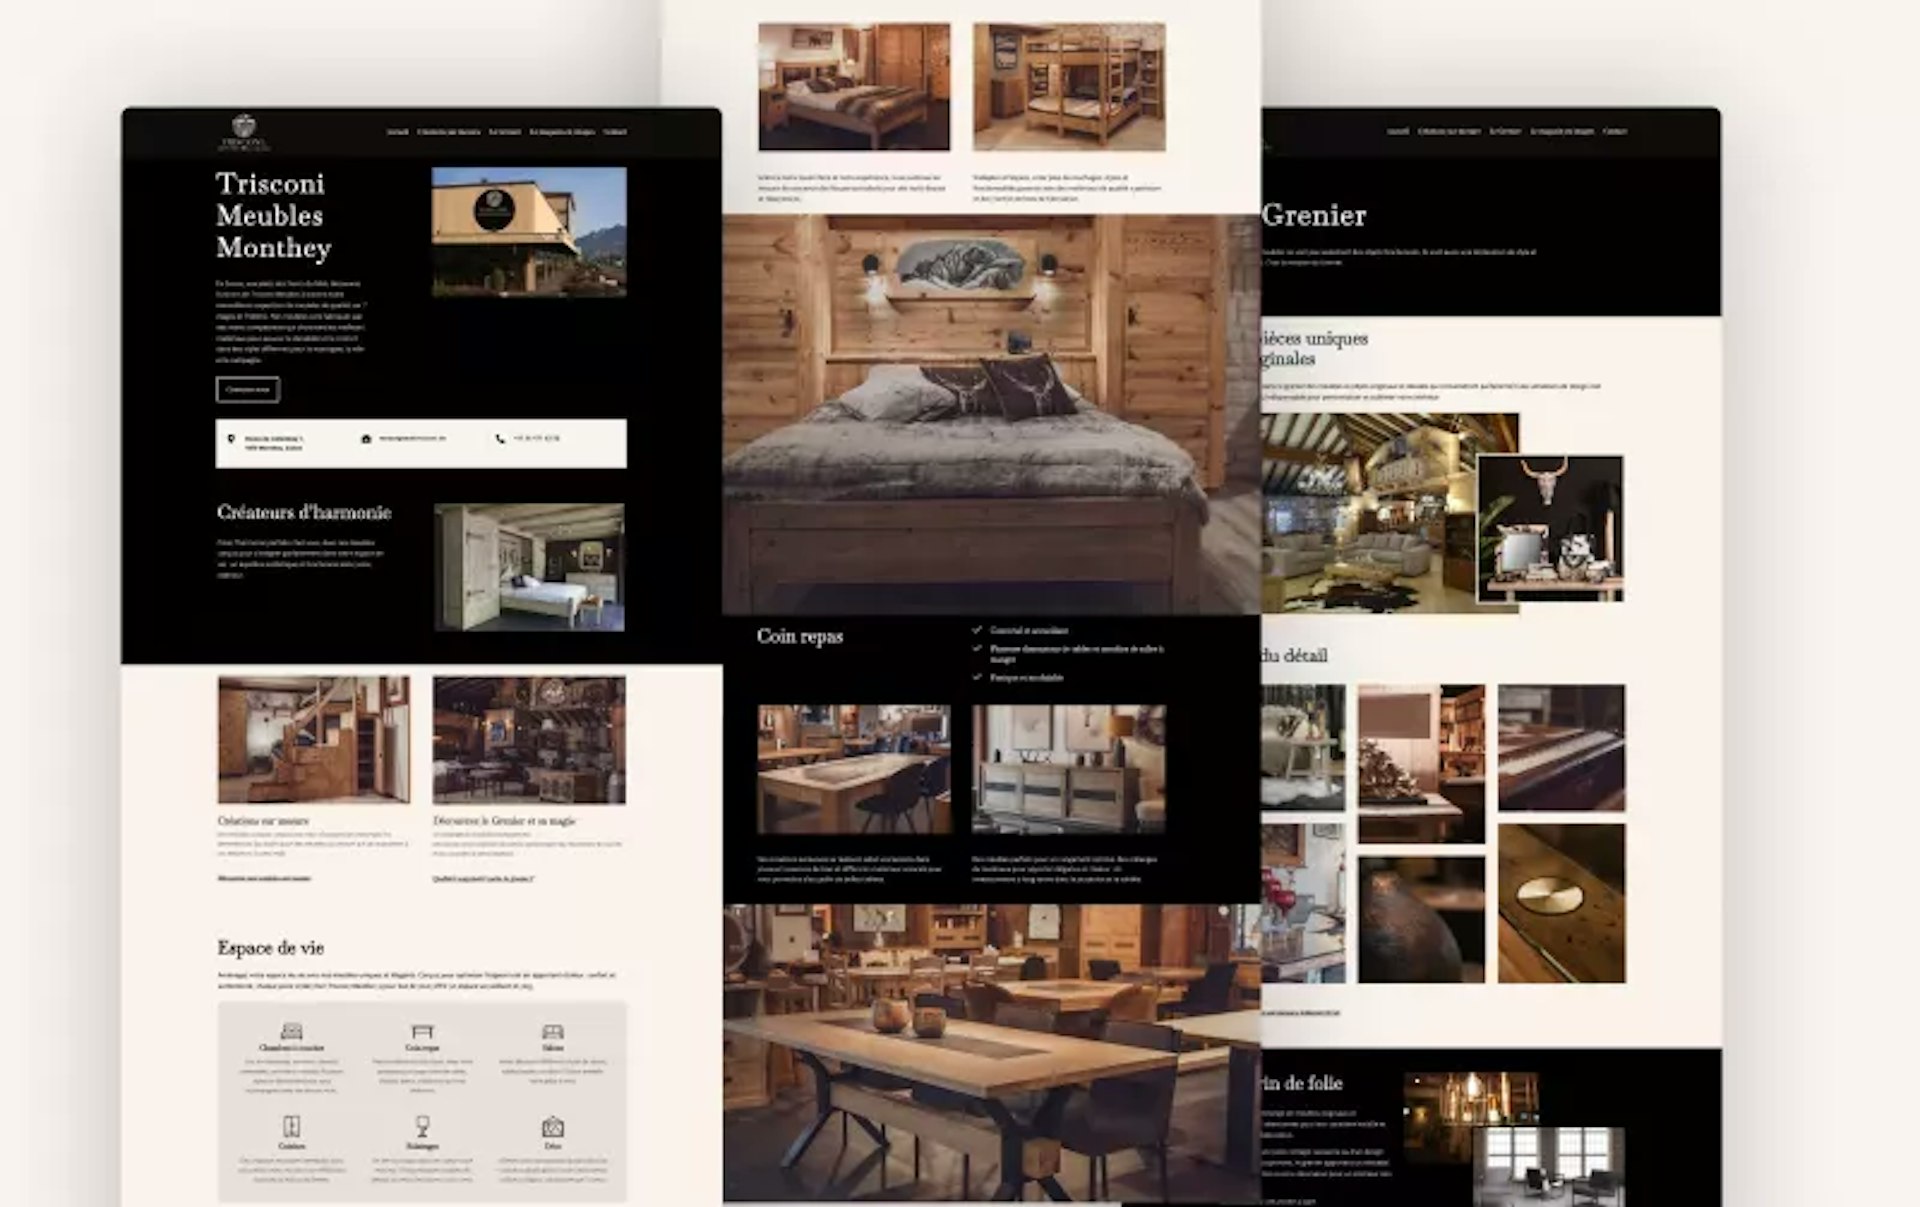 Mockup du site web des meubles Trisconi, design UI